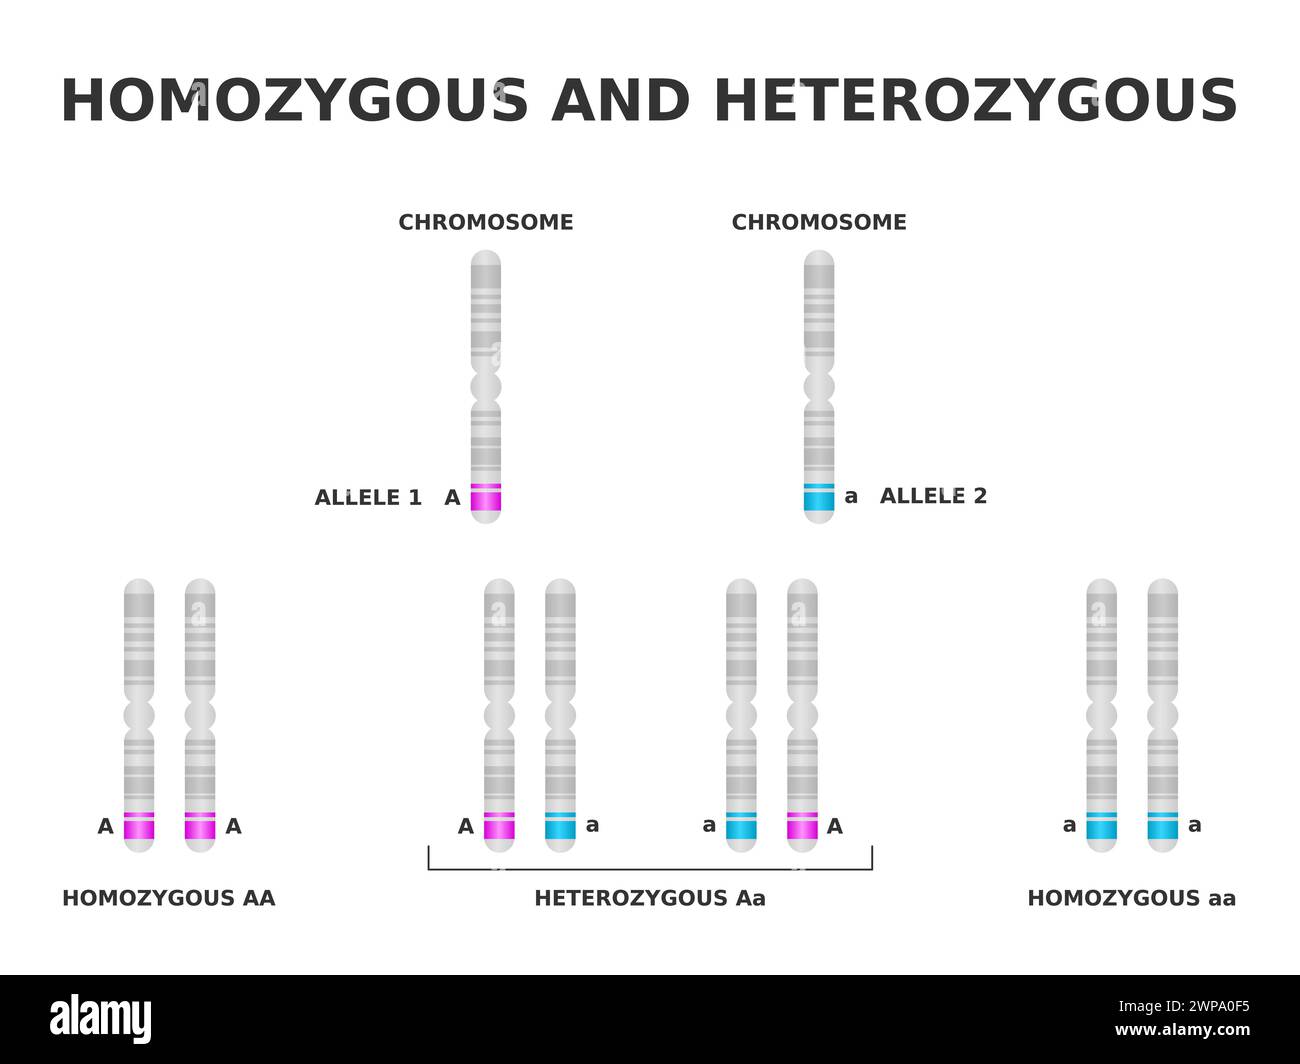 Homozygot und heterozygot. Homozygot hat dasselbe Allel für ein bestimmtes Merkmal, heterozygot hat ein anderes. Dominantes und rezessives Gen auf Chromosom. Stock Vektor